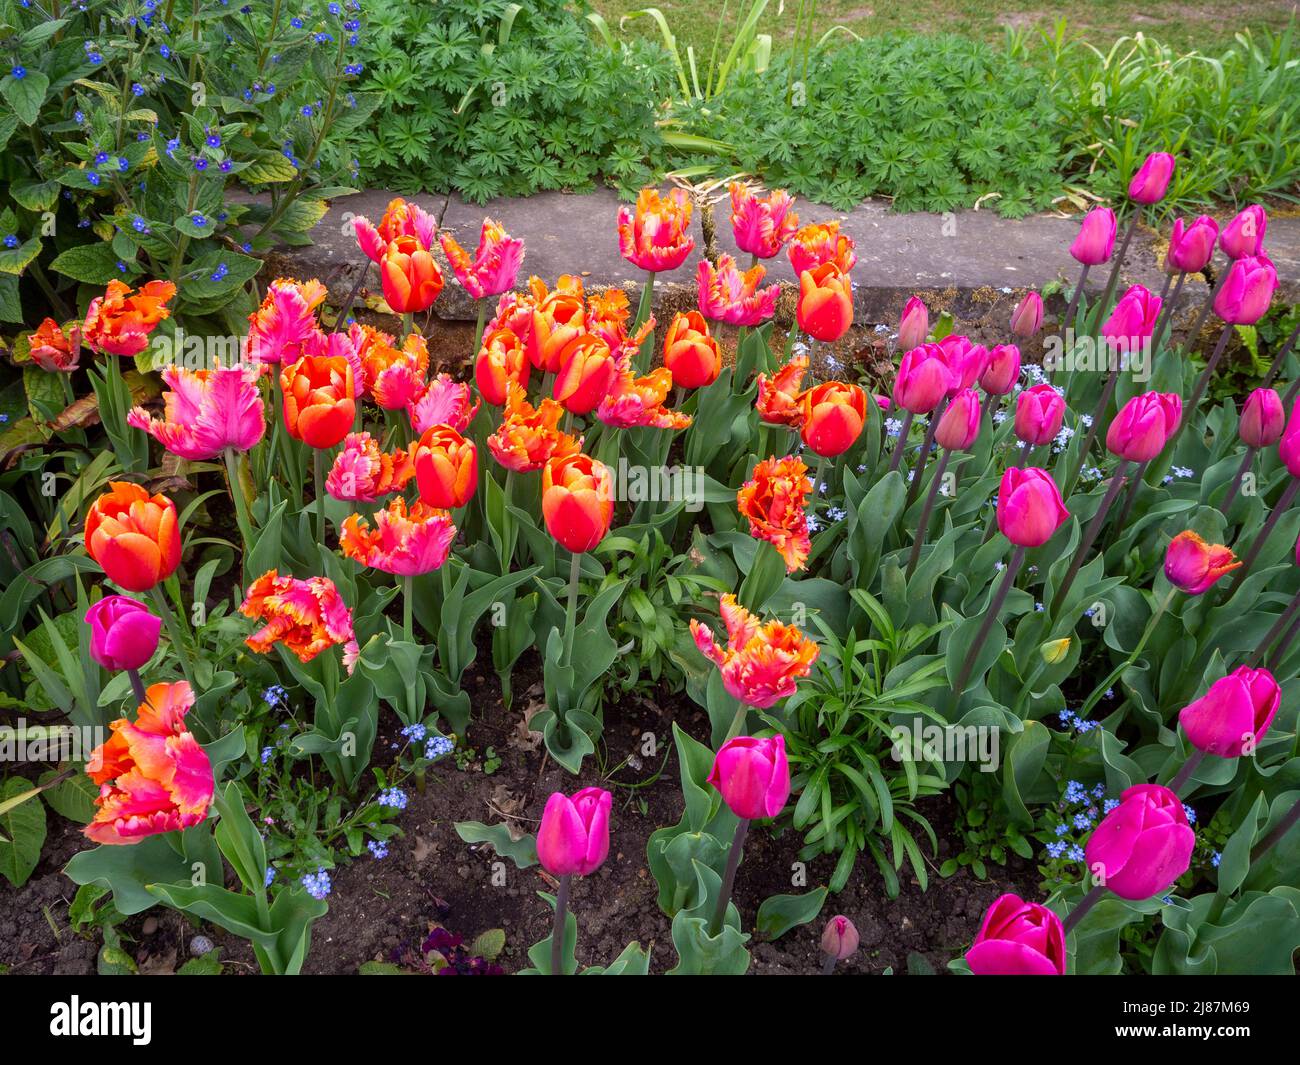 Chenies Manor Garden. Lebhafte Tulpen im April. Tulipa 'Amazing Parrot', dunkelrosa Tulpen, eine Mischung aus orangefarbenen und rosa Frühlingszwiebeln. Stockfoto